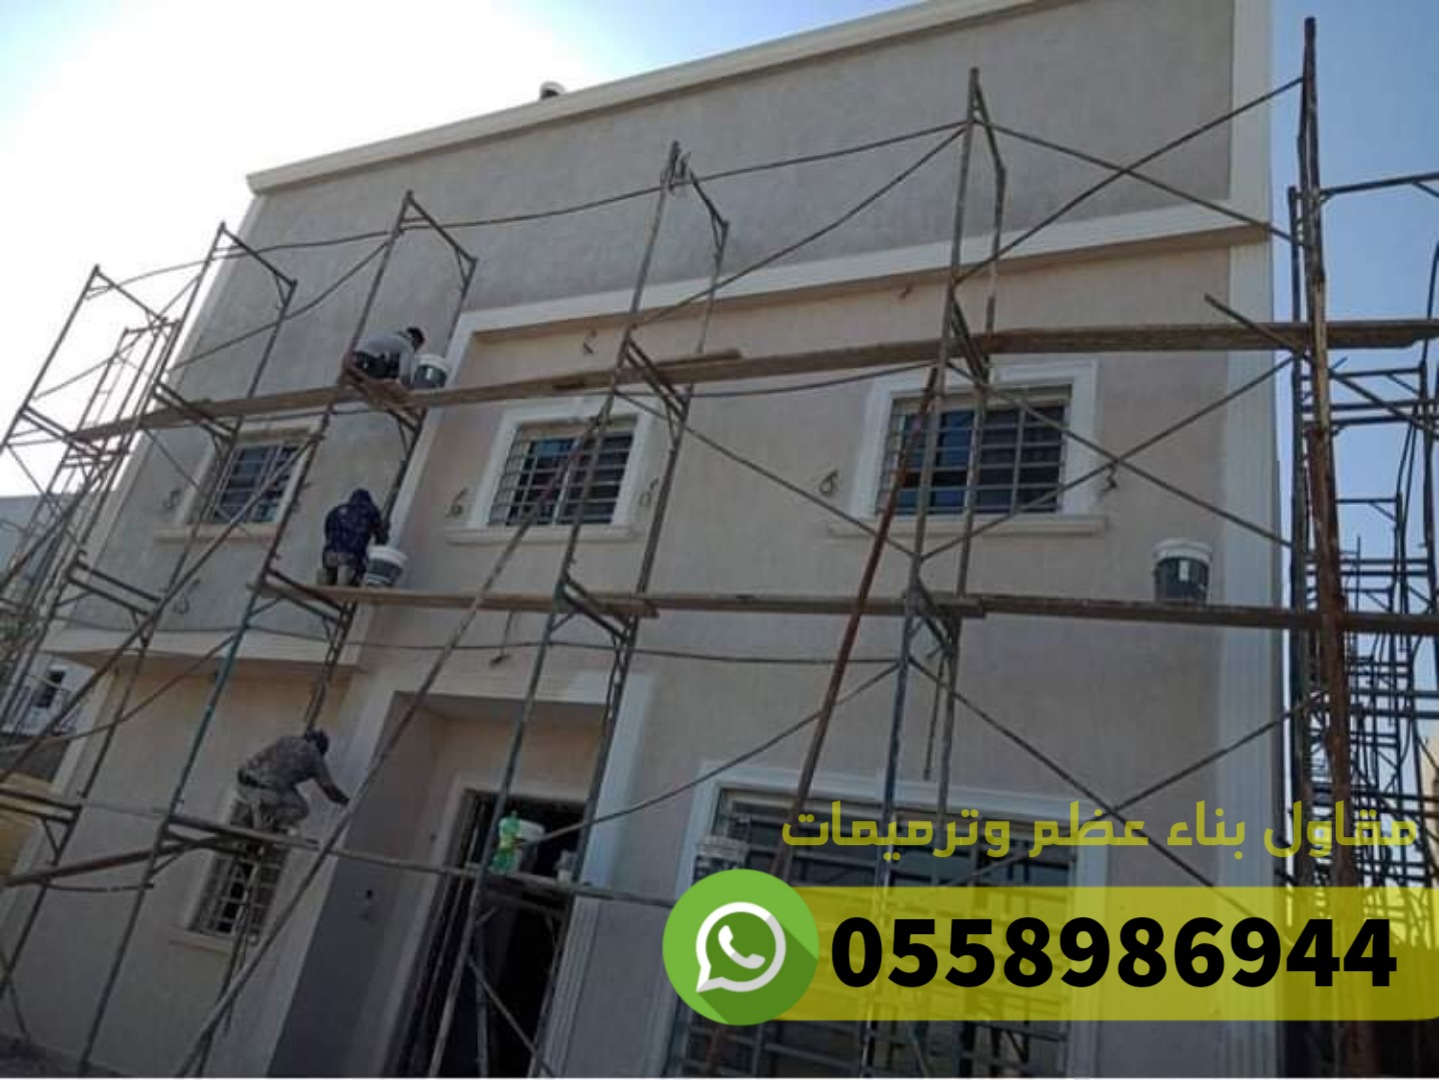 منازل - ترميم منازل و بناء عظم في جدة, 0558986944 P_2486mzdk81